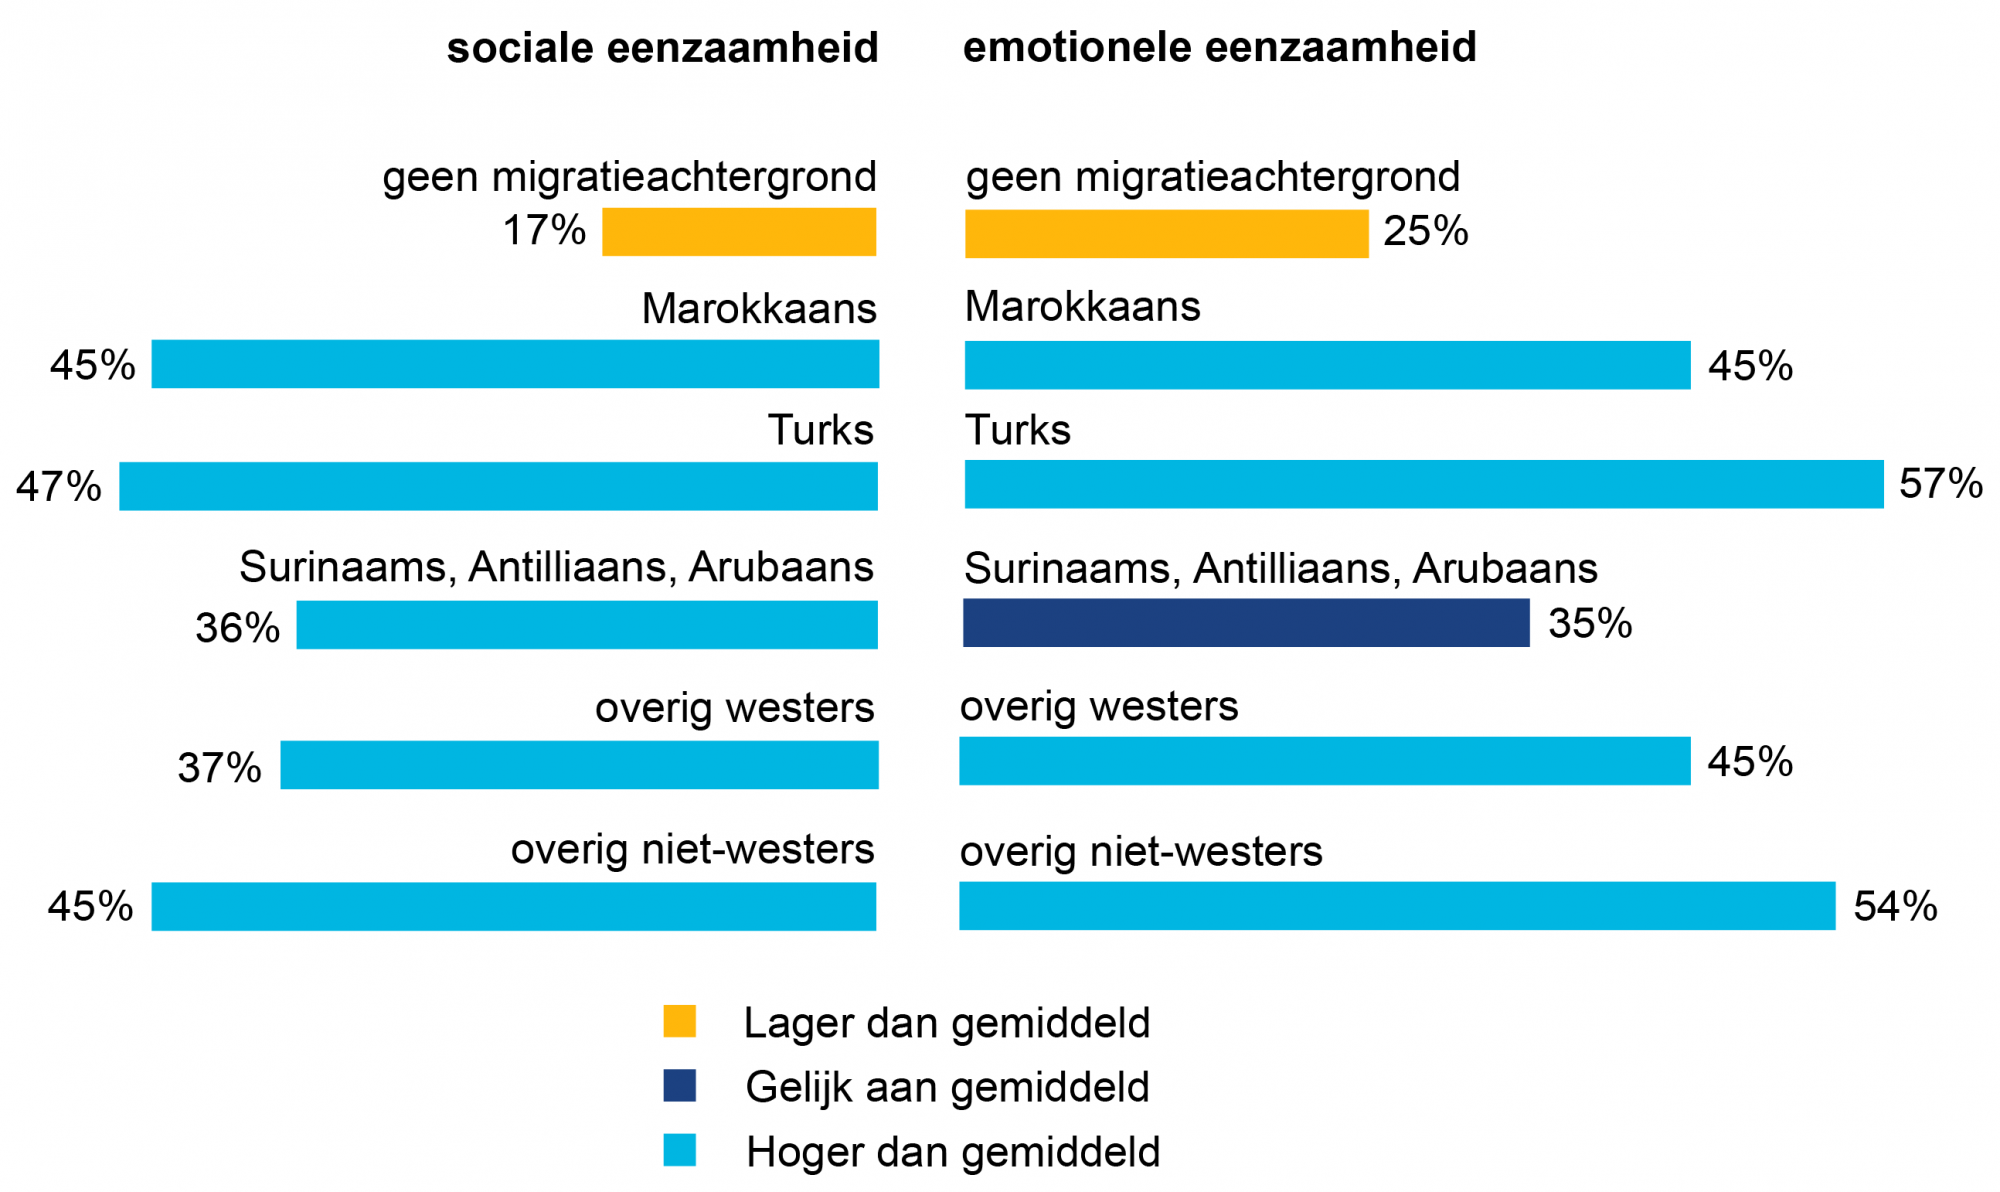 33% van de Utrechters is emotioneel eenzaam, 26% is sociaal eenzaam. Utrechtse volwassenen met een migratieachtergrond zijn vaker emotioneel of sociaal eenzaam.